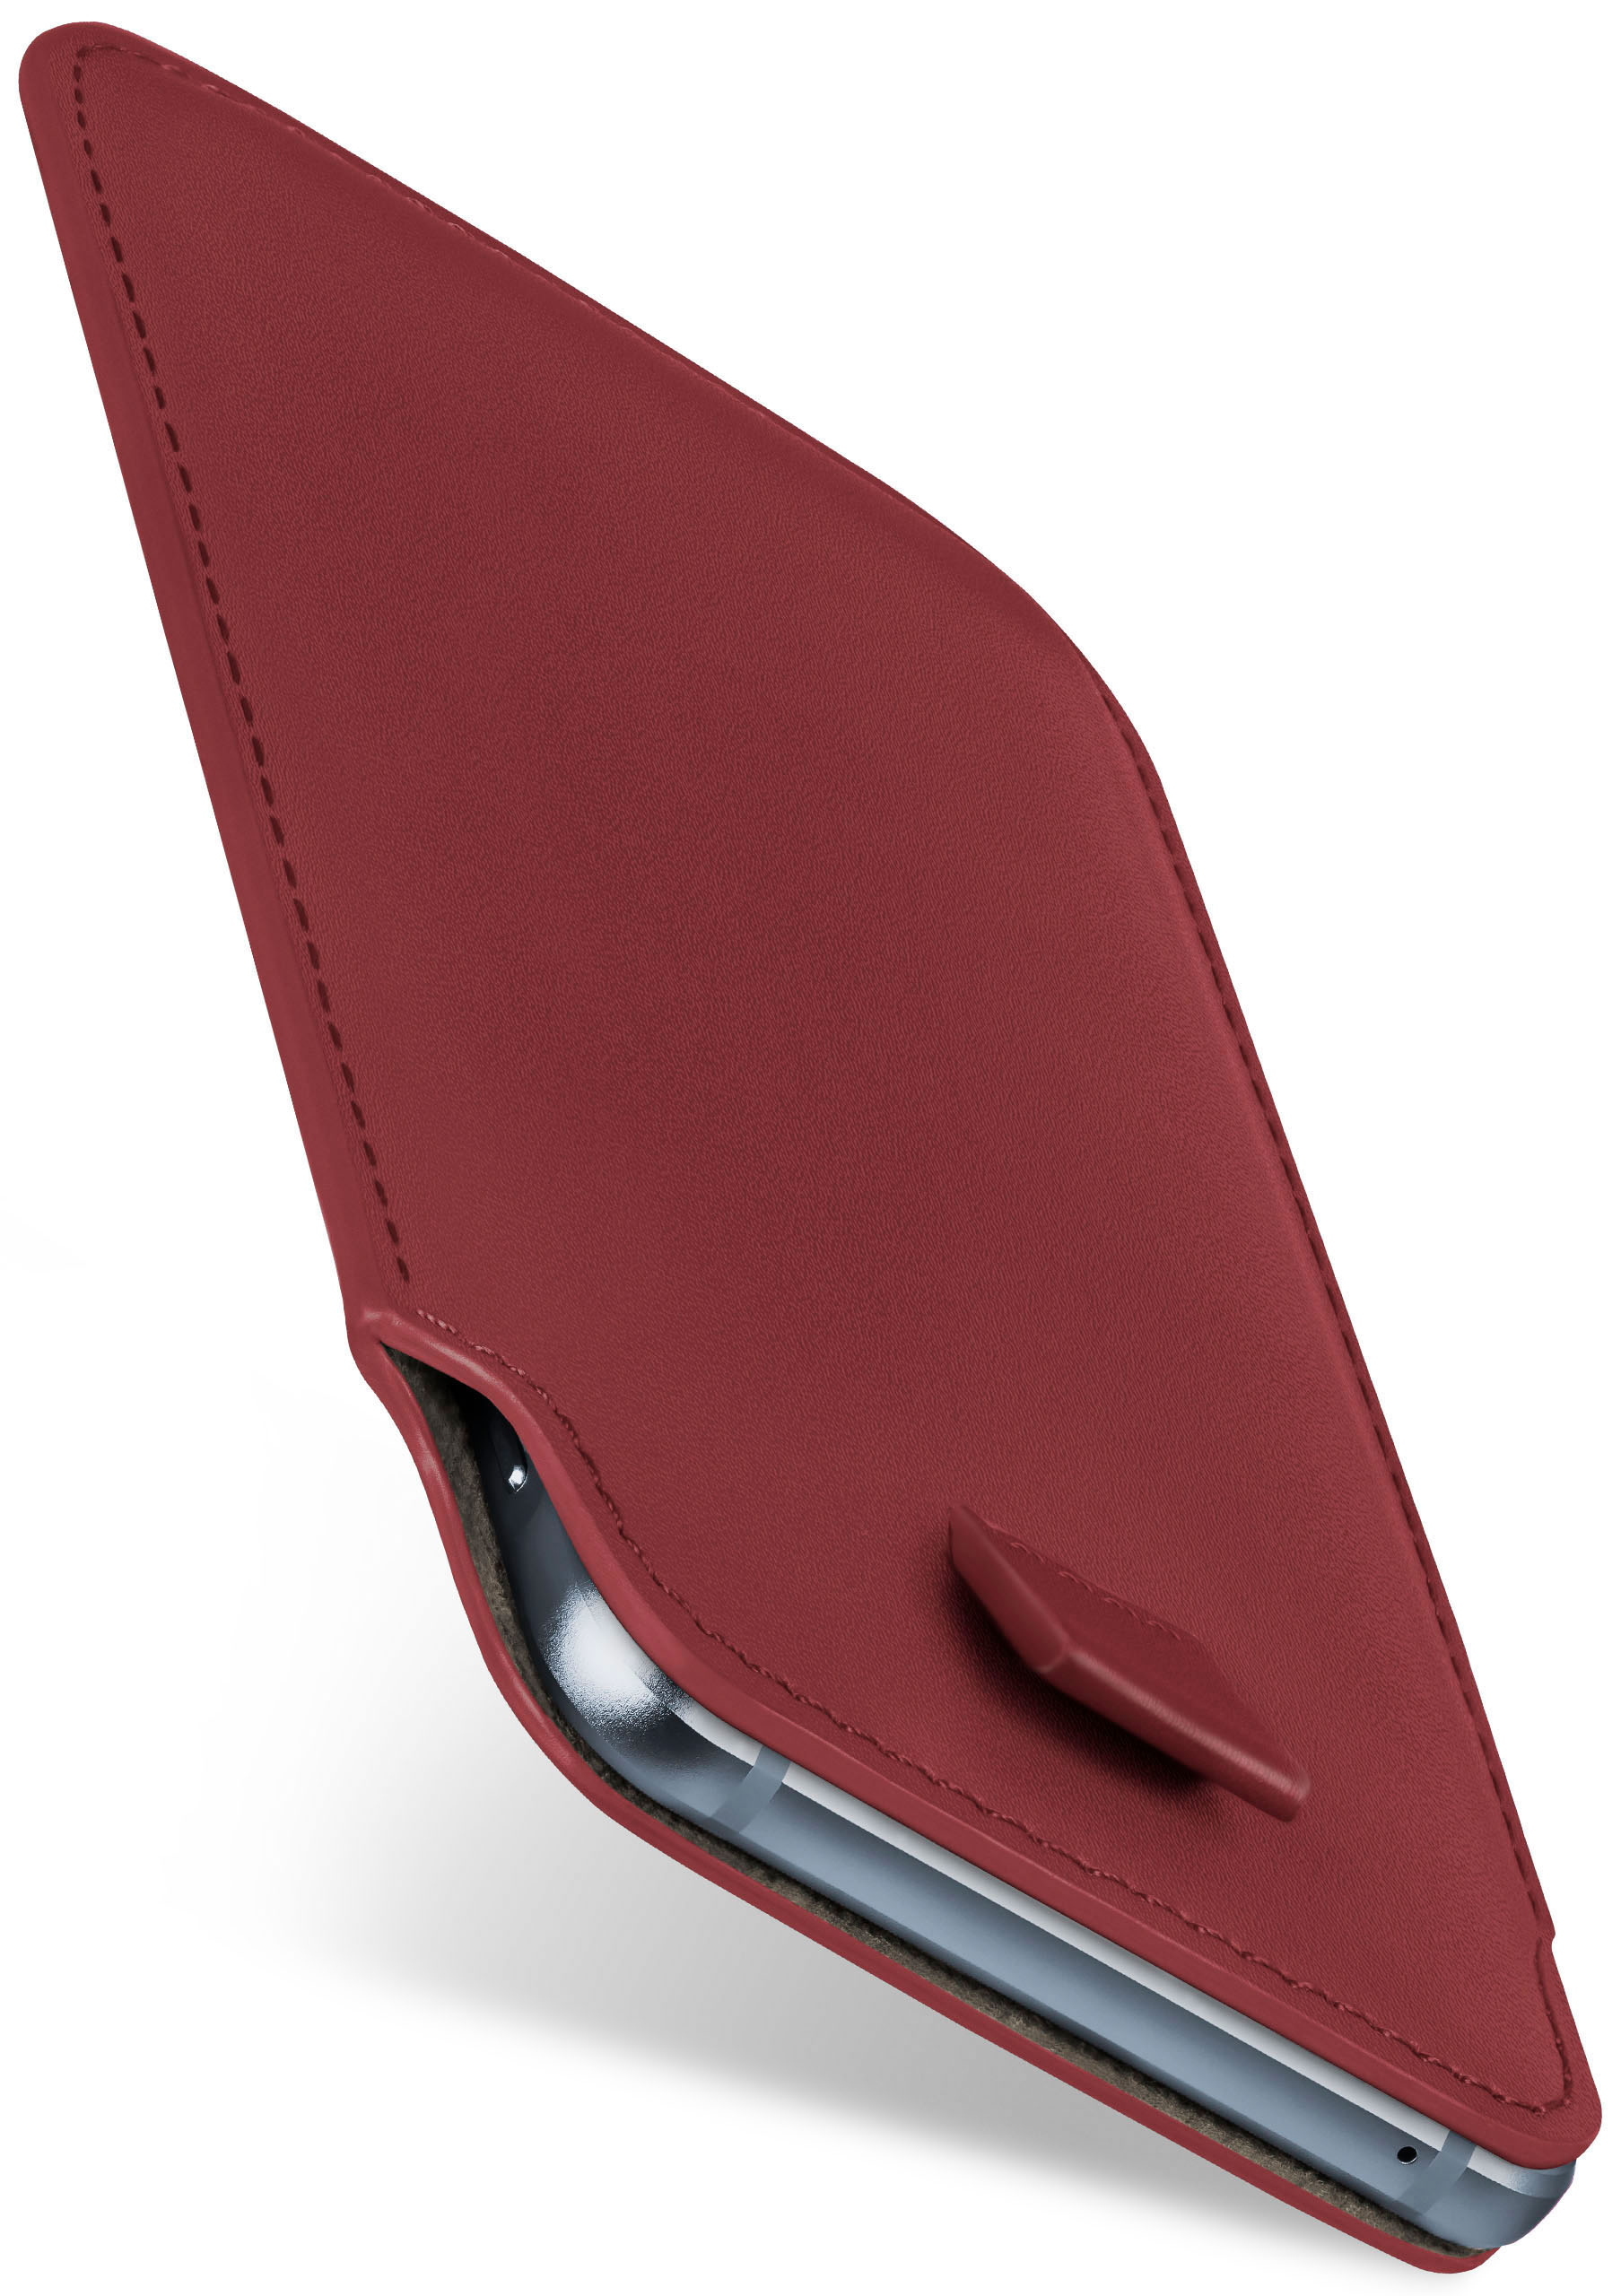 Doro, 8040, MOEX Slide Cover, Maroon-Red Full Case,